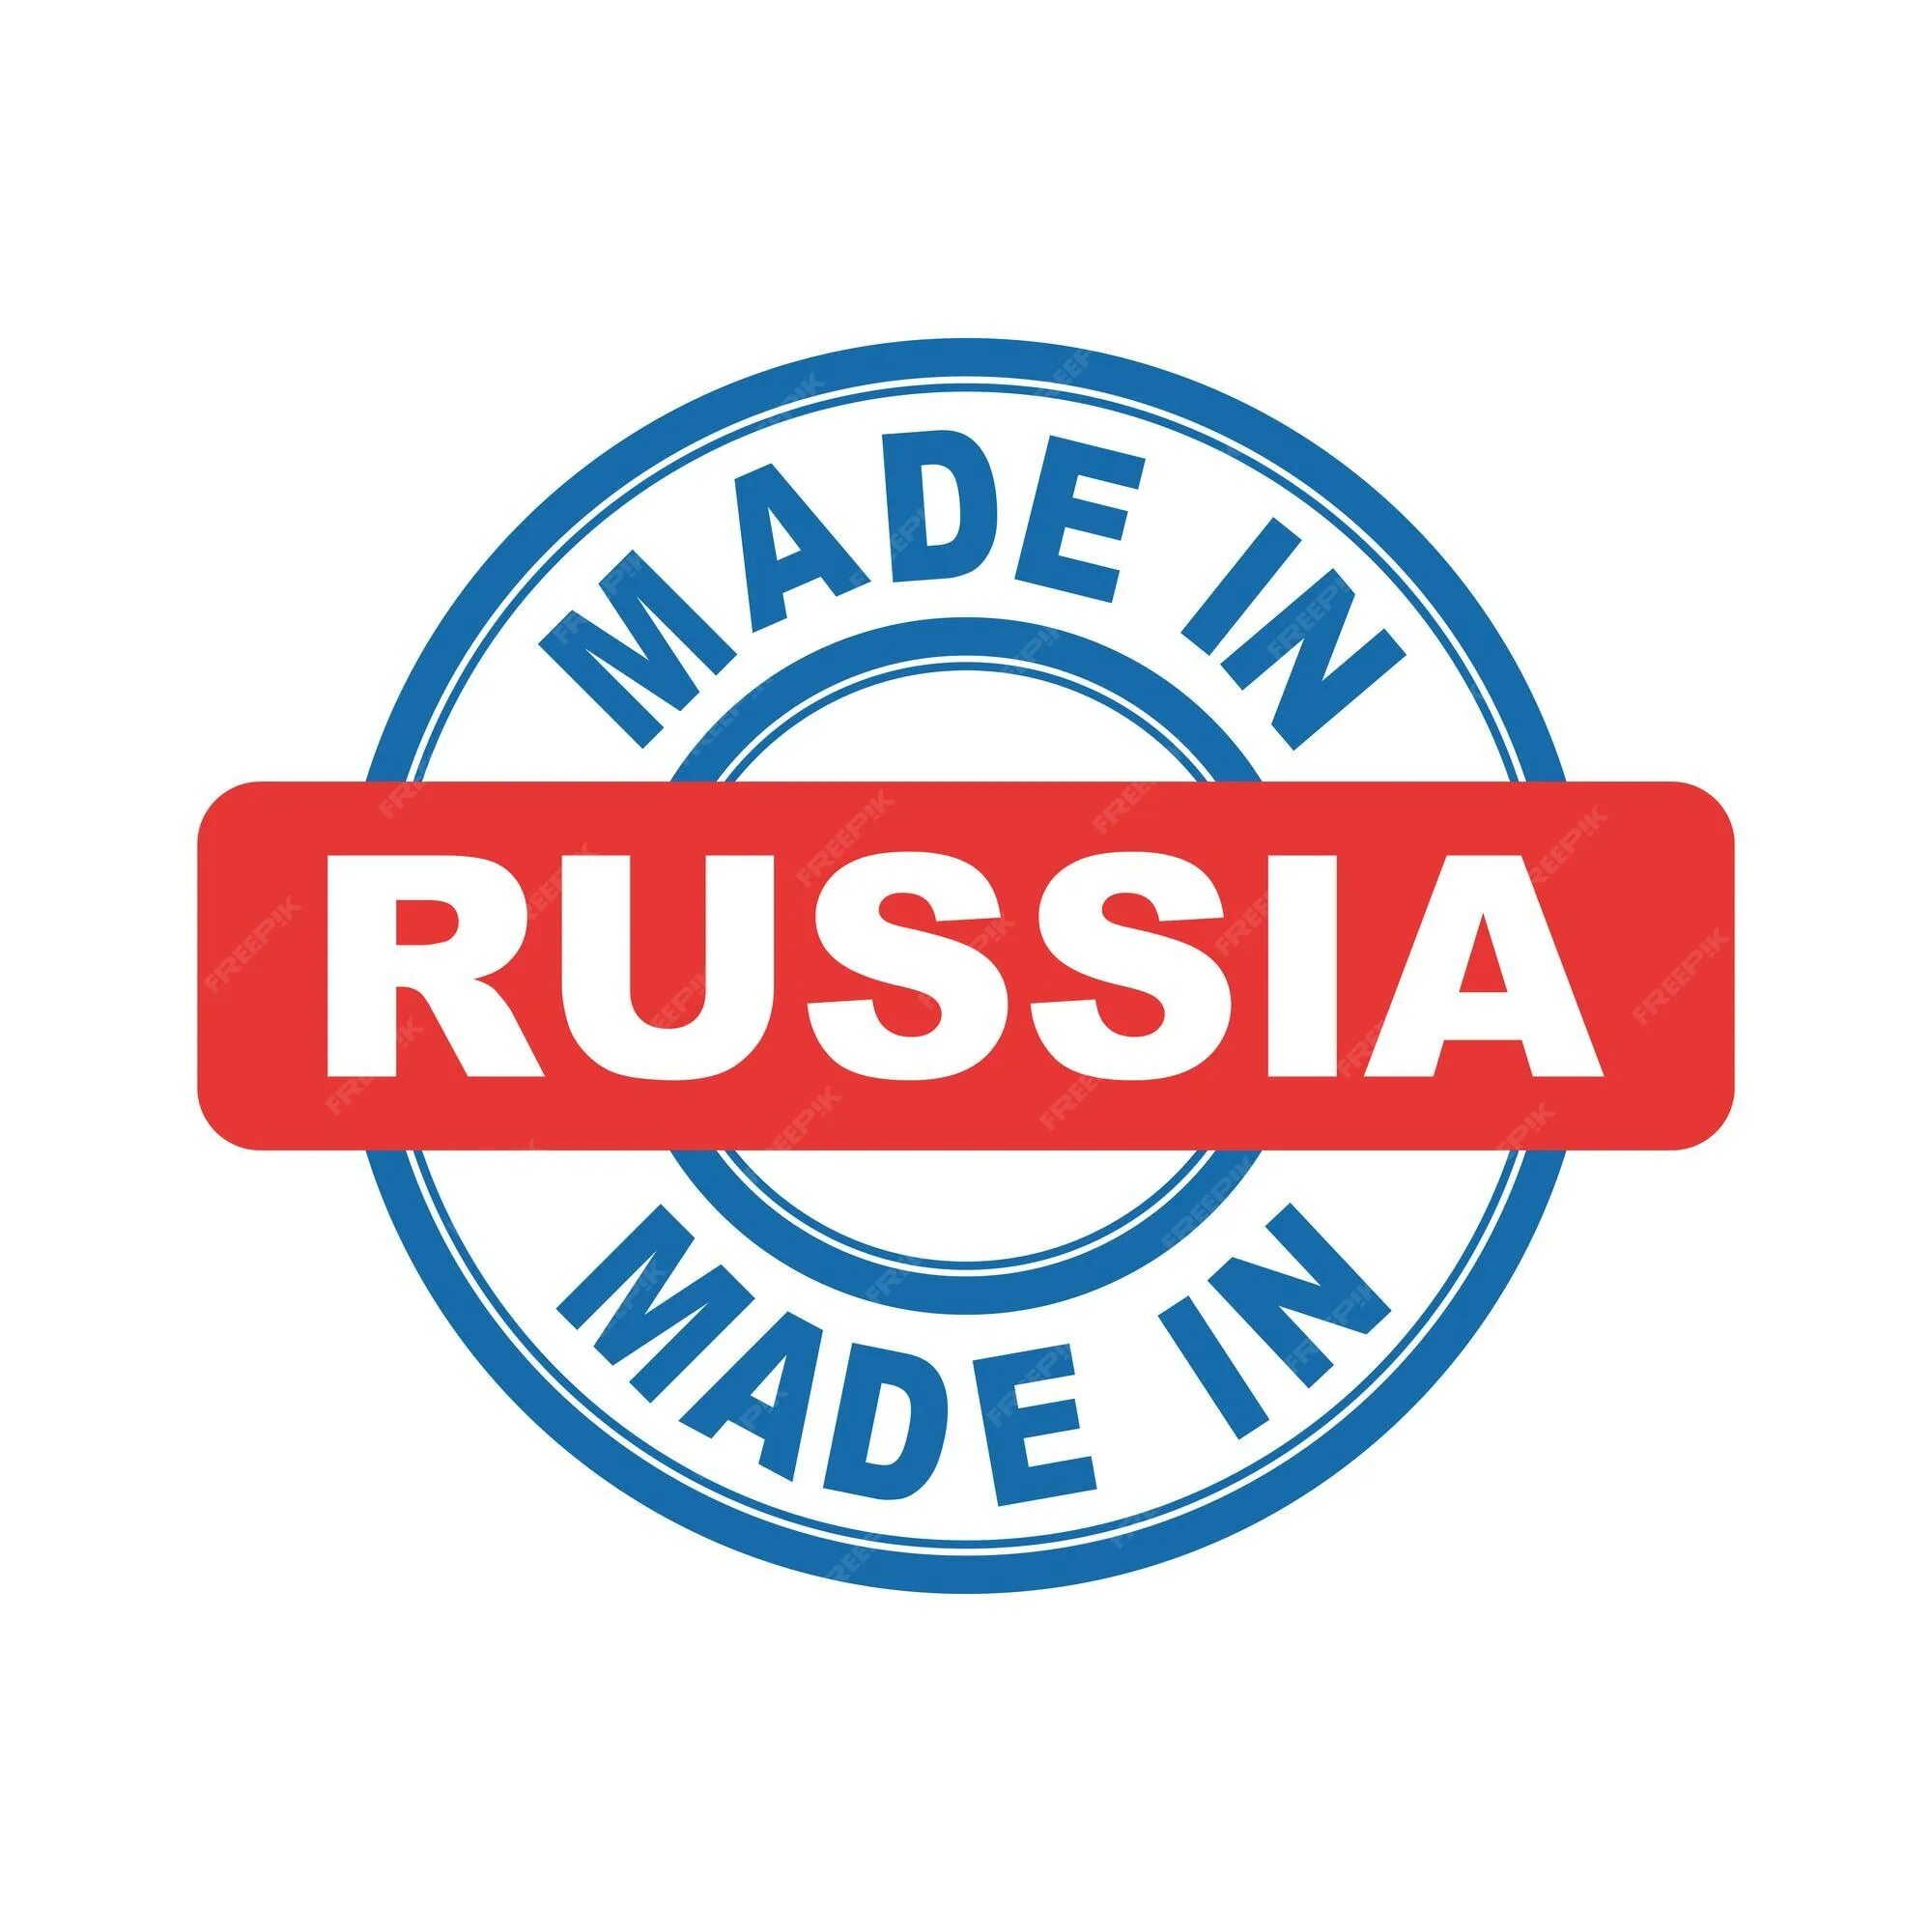 Сток раша. Сделано в России. Made in Russia печать. Надпись сделано в России. Сделано в России логотип.